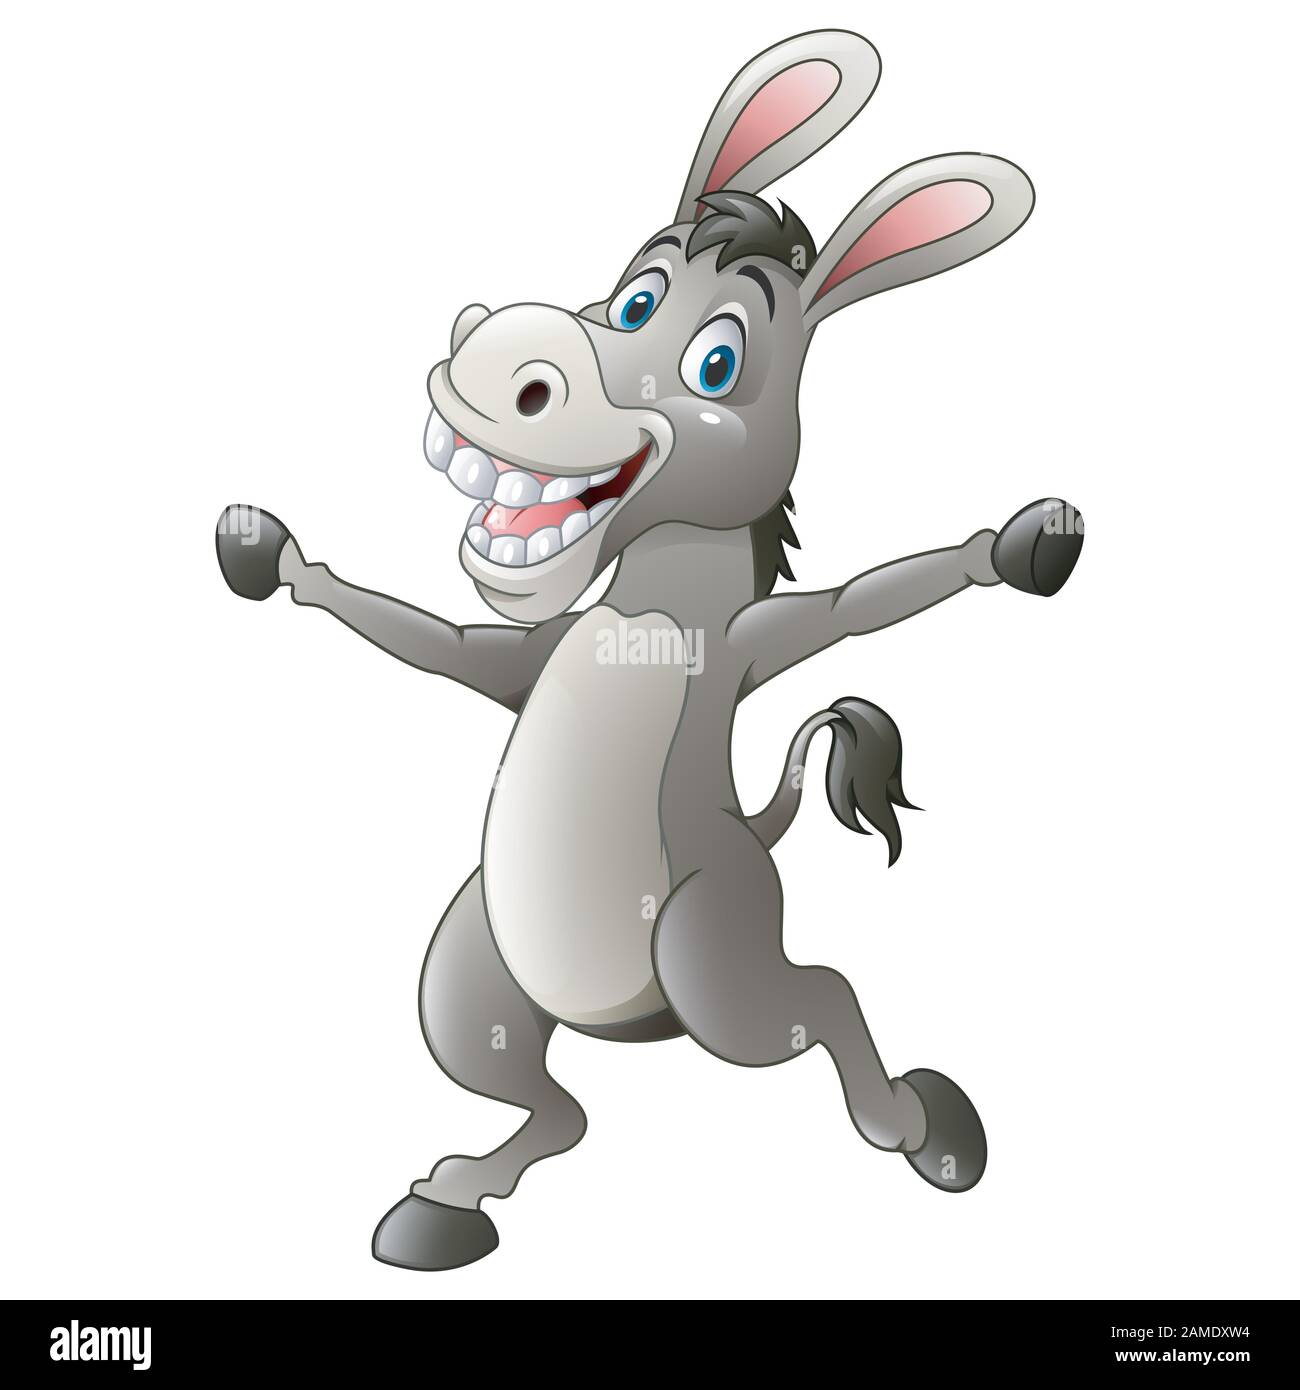 Cartoon funny donkey Stock Vector Image & Art - Alamy